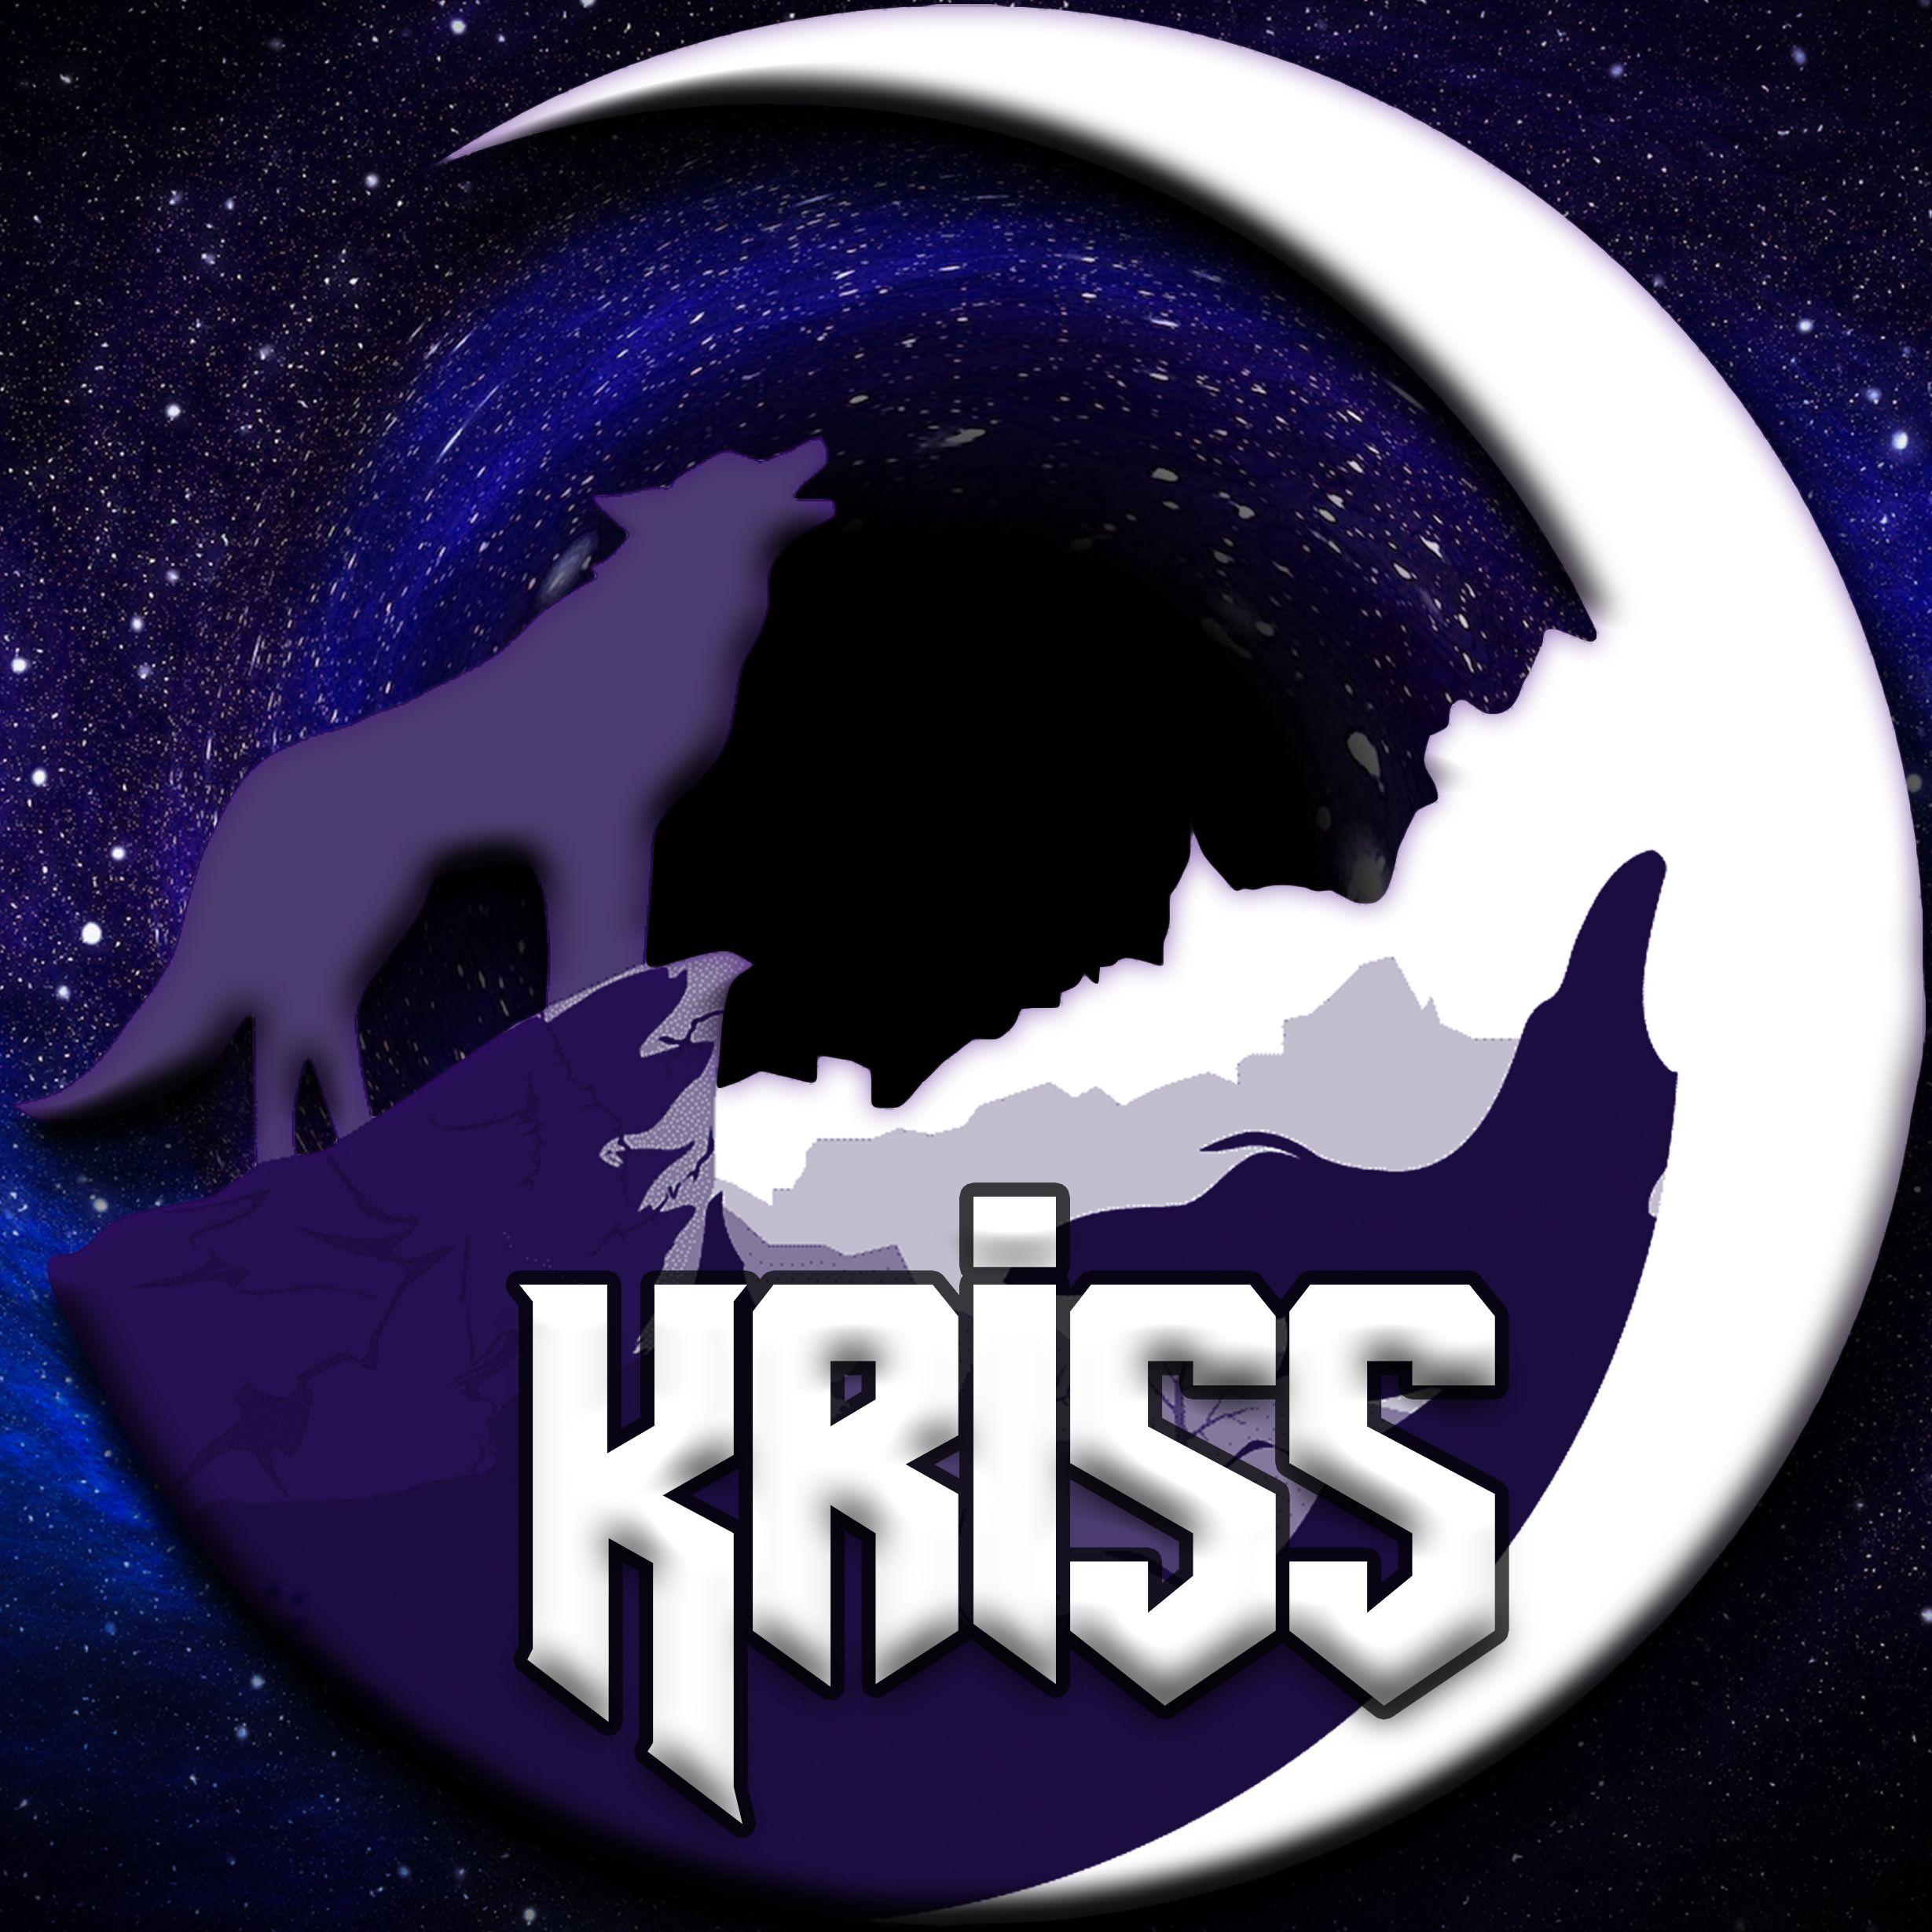 Player Krissmas1 avatar